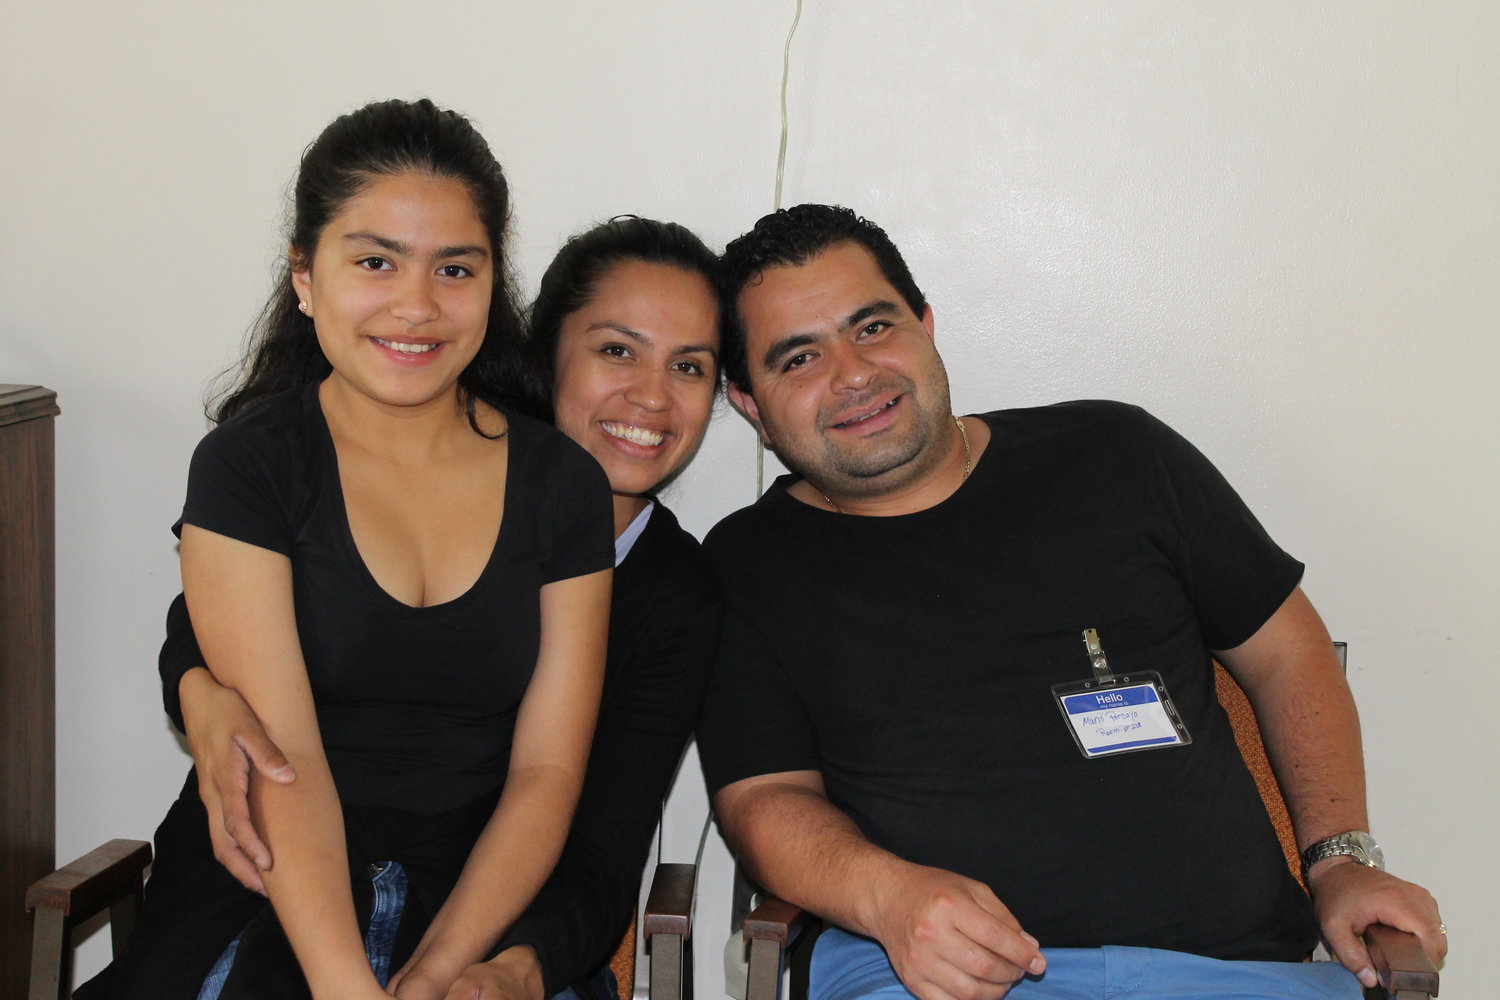 Una vida de servicio a parejas y familias:  Mario y Yazmin con su hija Emily. A partir del 1 de agosto Mario será el nuevo coordinador de la pastoral familiar diocesana.